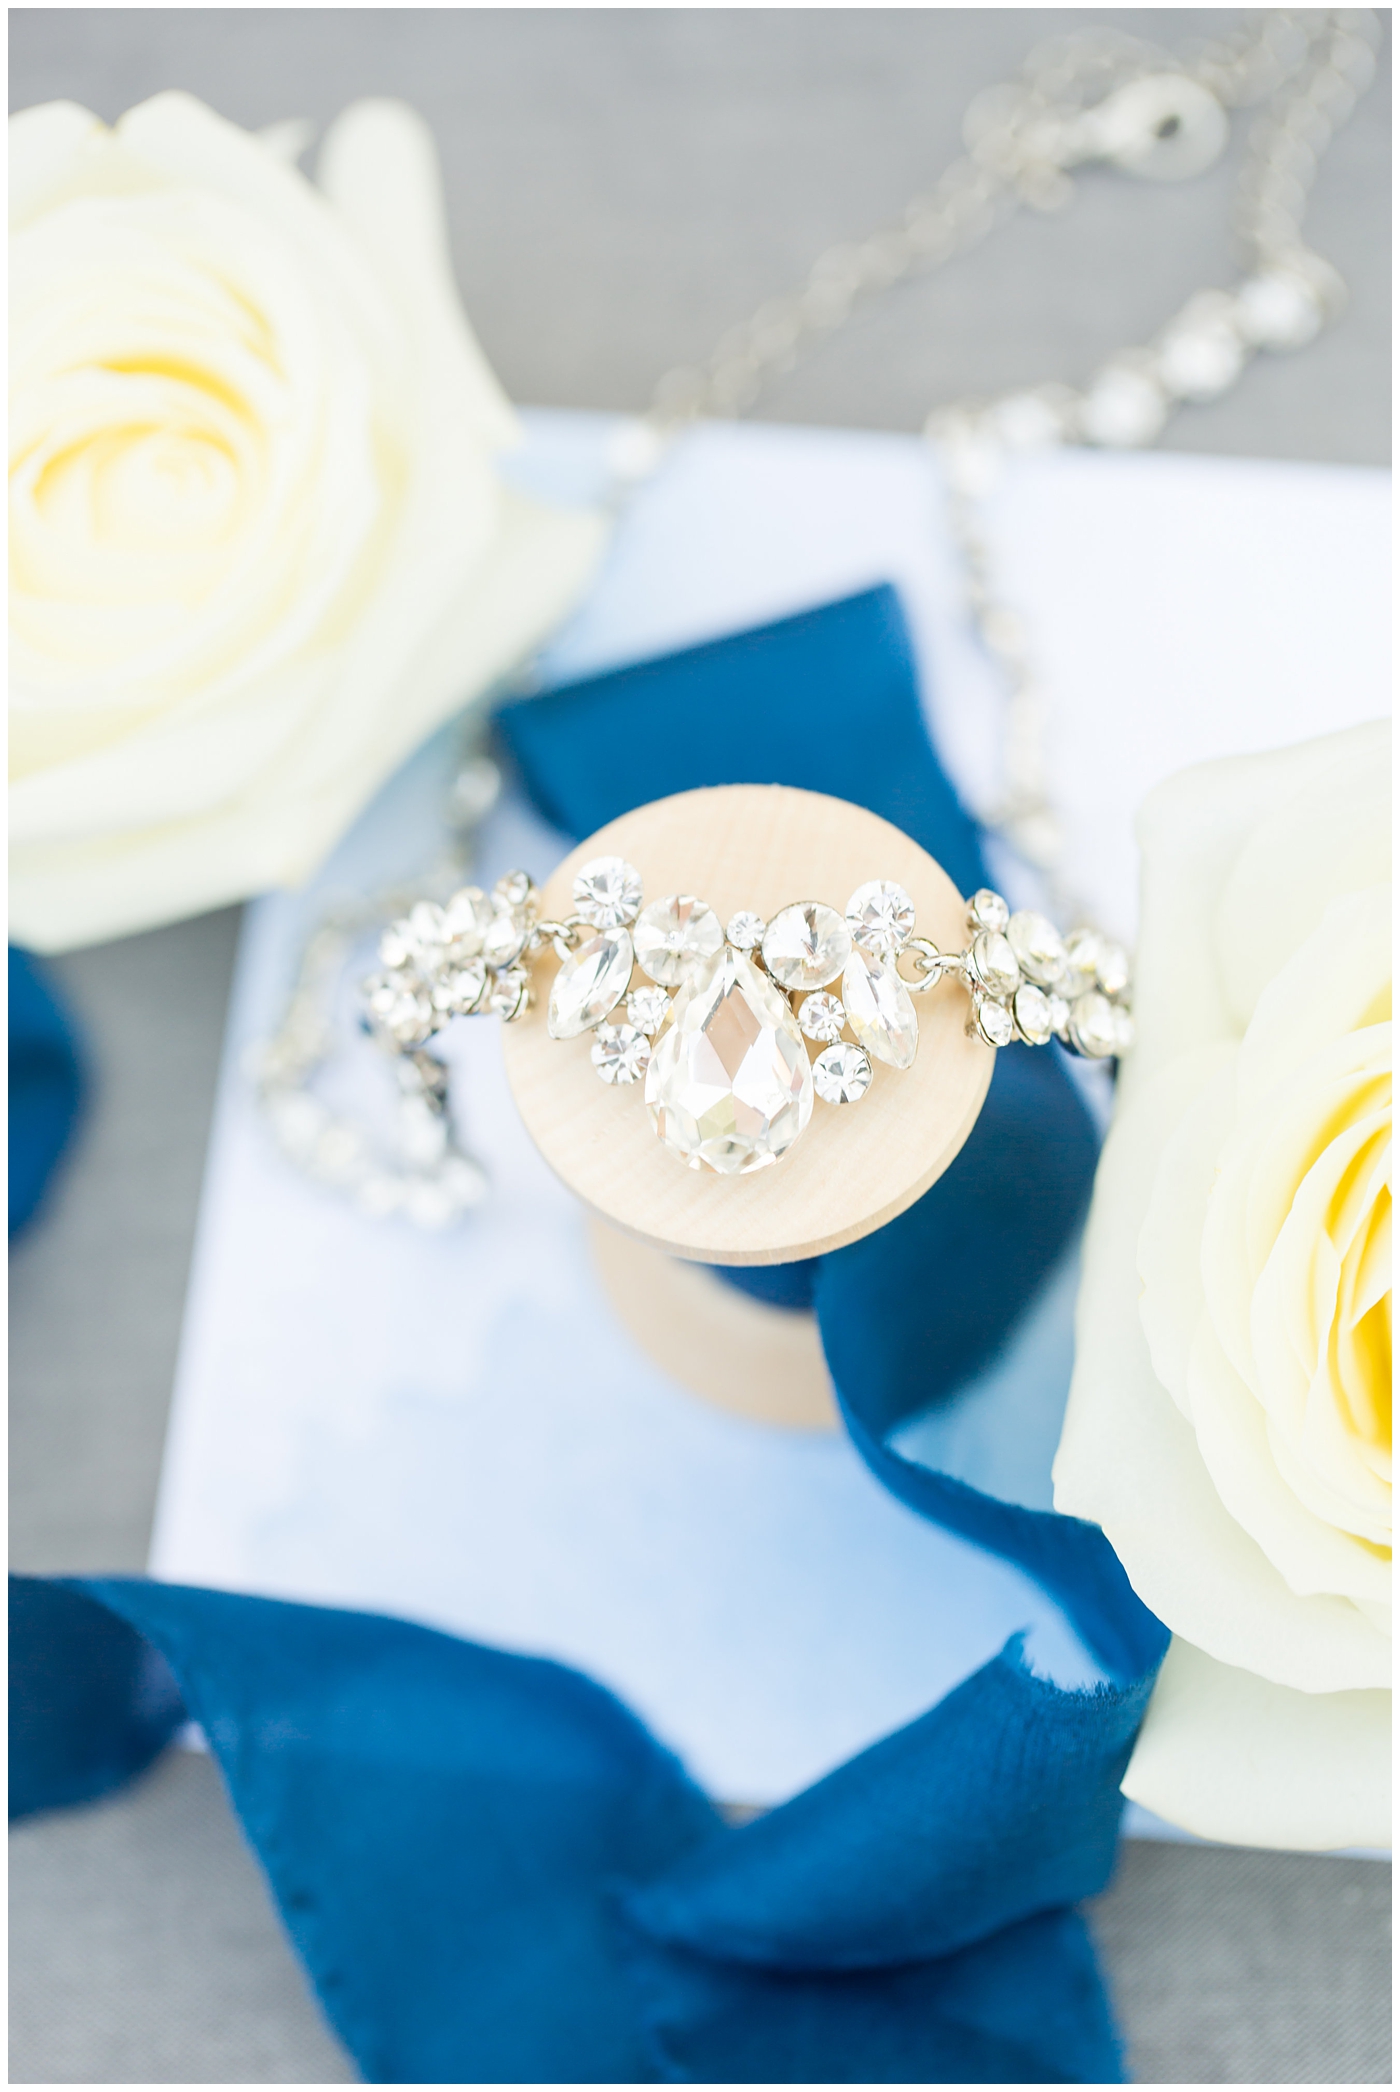 diamond necklace wedding day jewelry detail shot